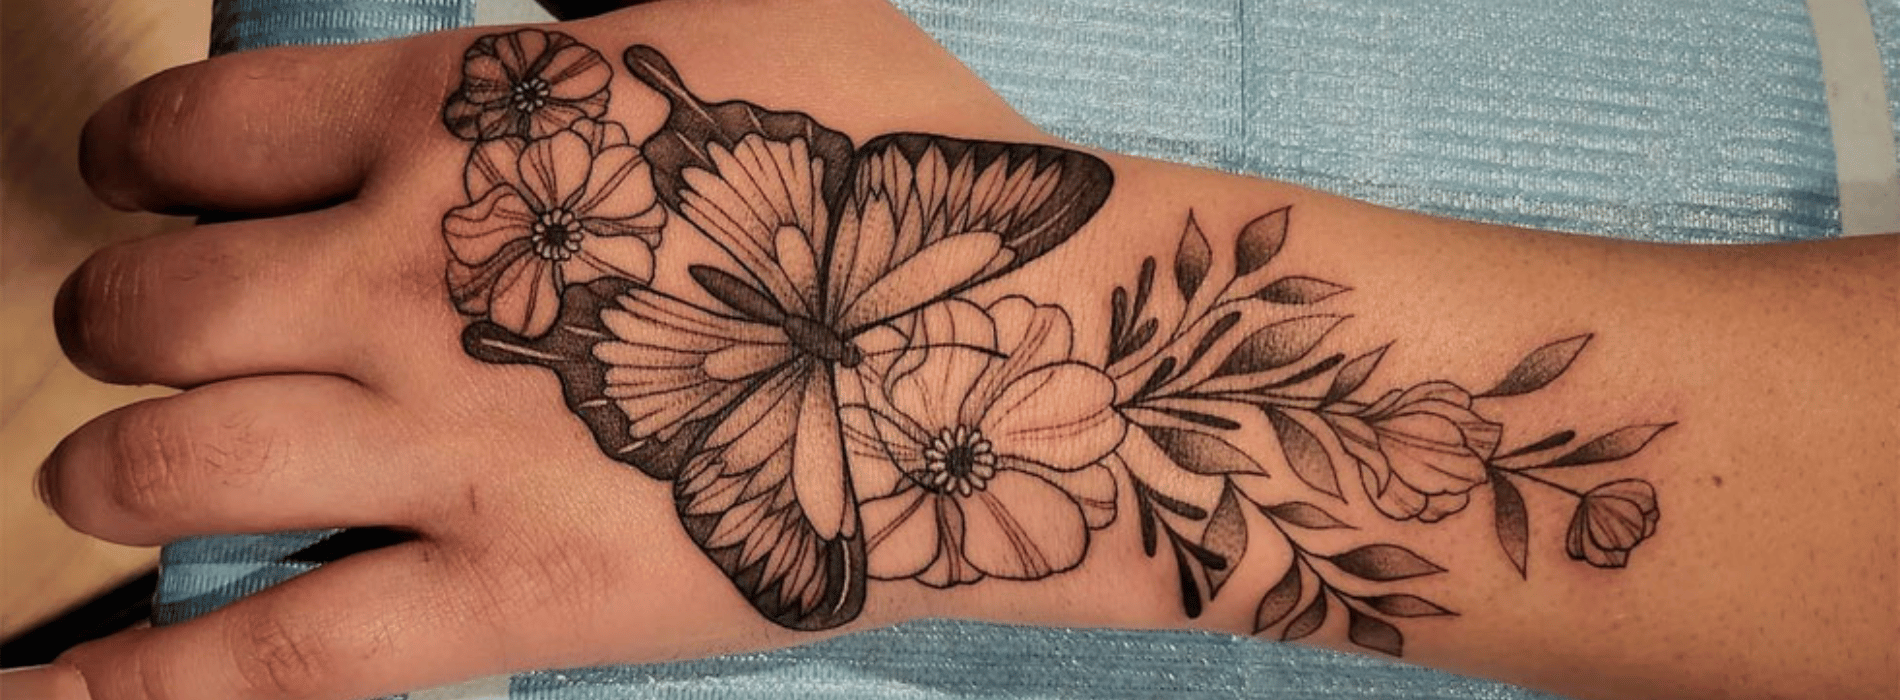 Significado del tatuaje de mariposa